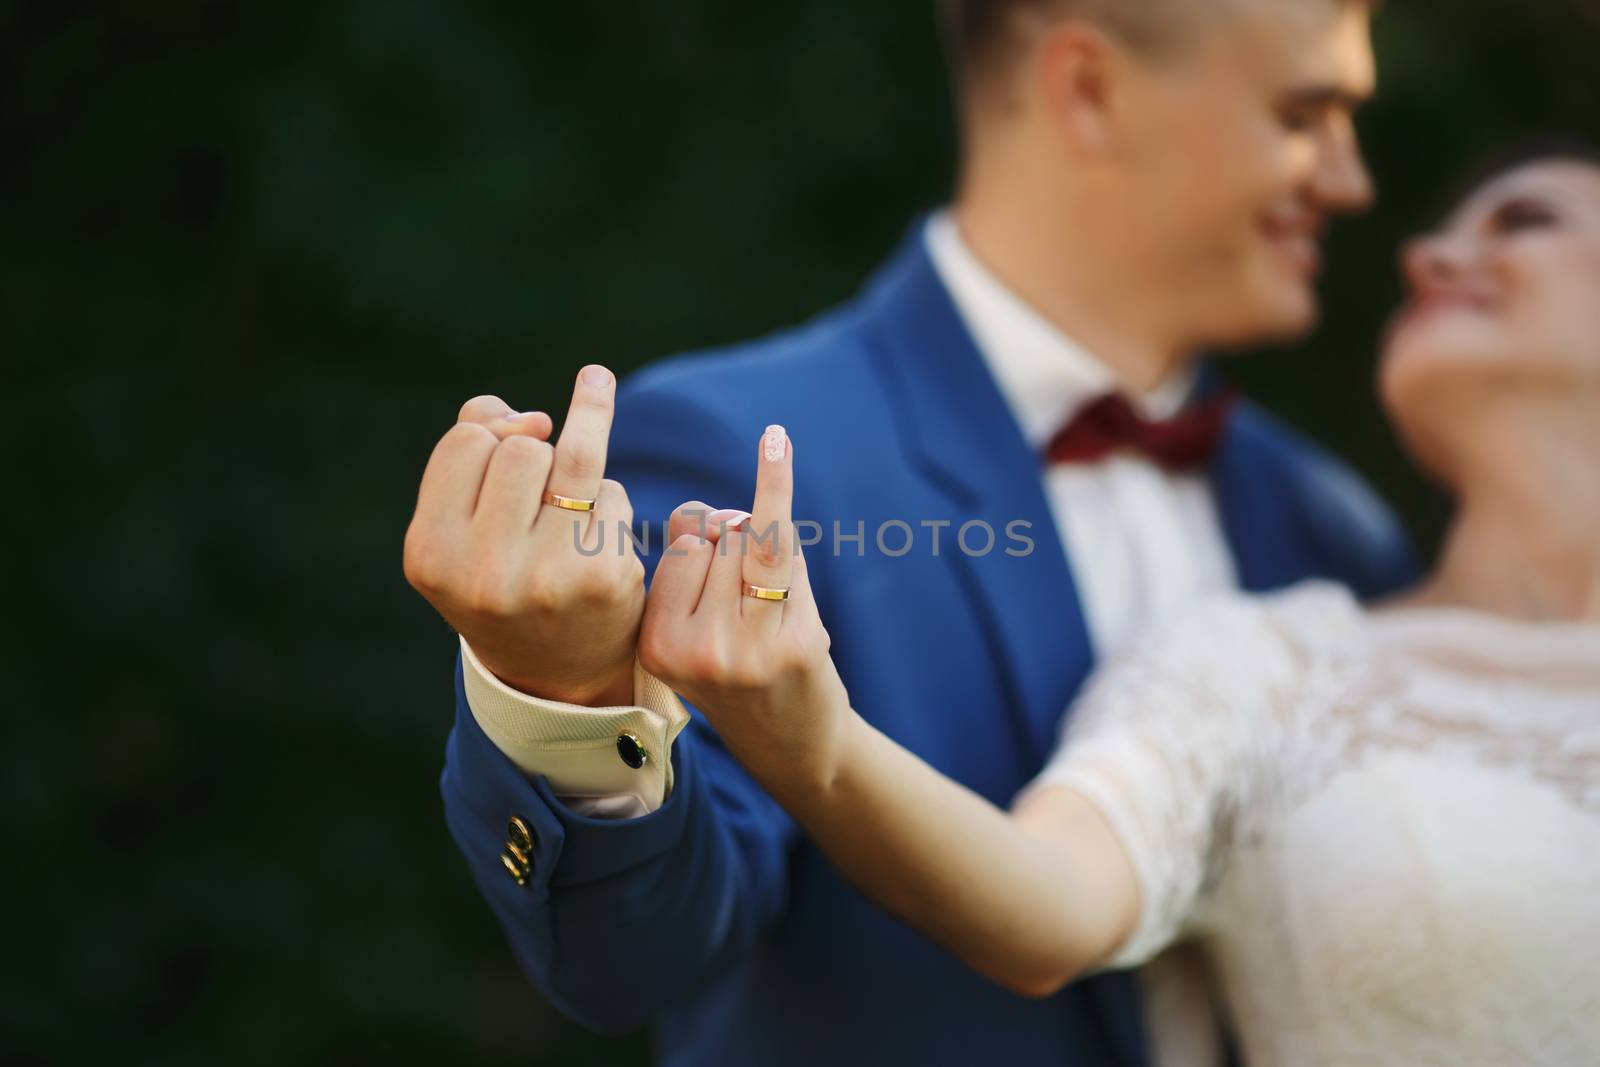 Hands of bride and groom in wedding rings by natazhekova